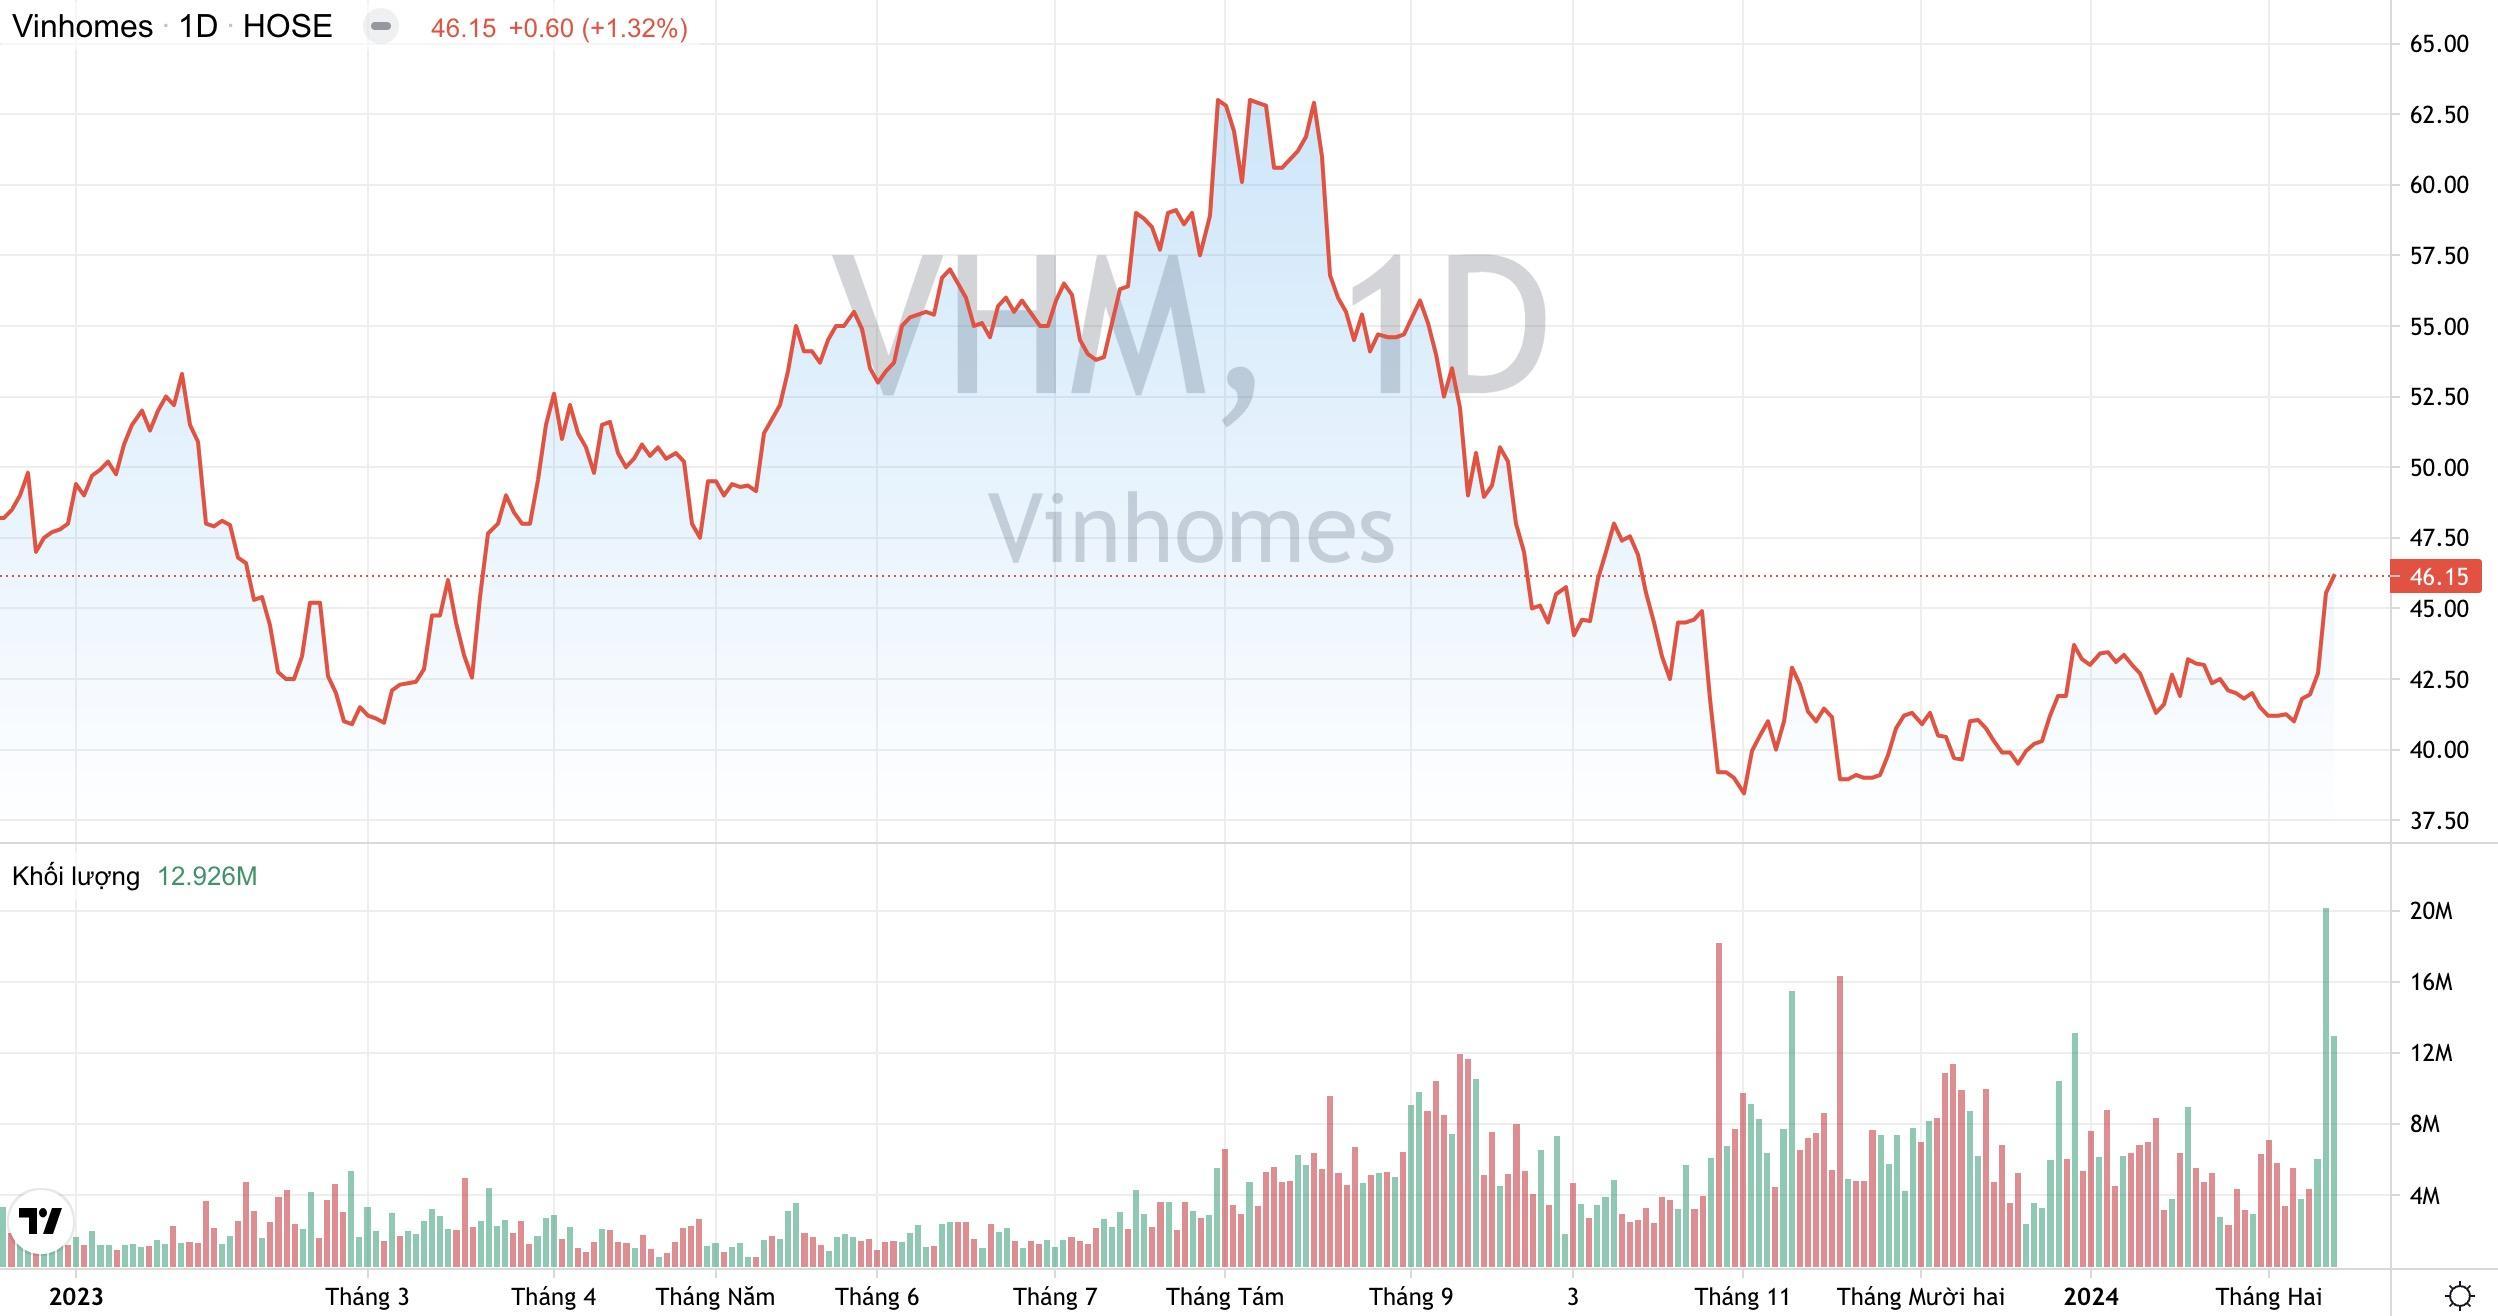 Khối lượng giao dịch và xu hướng giá cổ phiếu VHM của Vinhomes từ đầu năm 2023 đến nay. (Nguồn: TradingView)